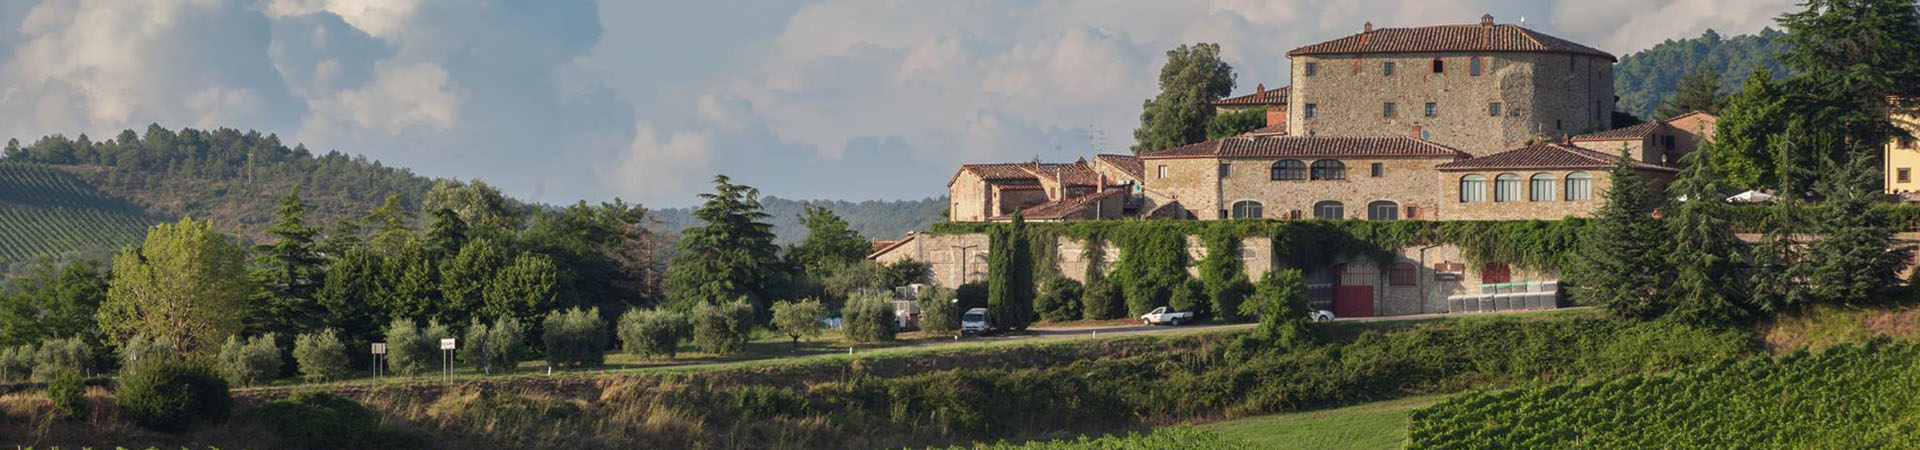 Ferienhäuser in der Toskana von Toscana Forum |  Ferienhaus Urlaub